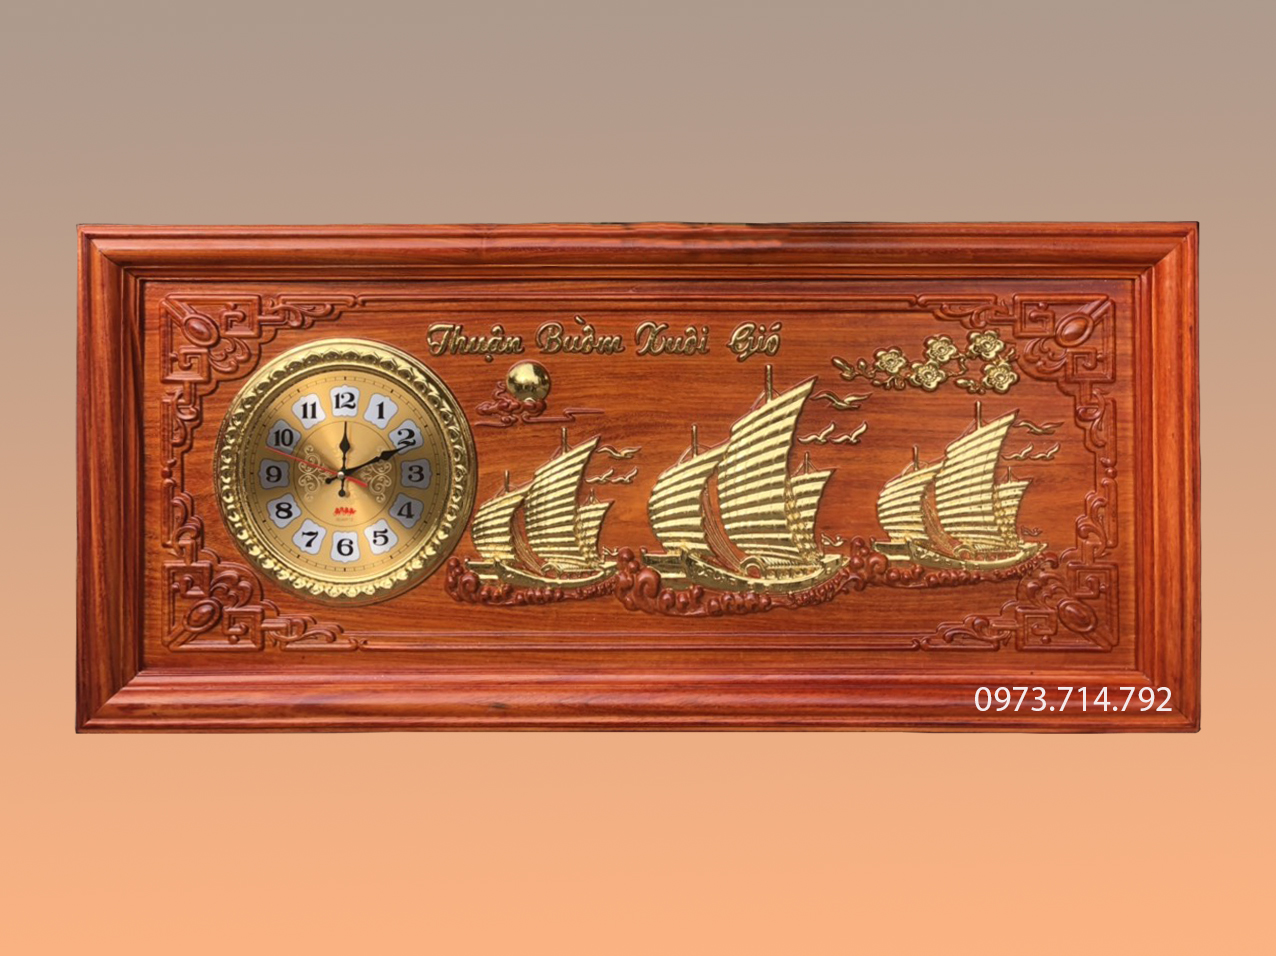 Tranh gỗ đồng hồ chữ tâm dát vàng TRG13 kích thước Rộng 67cm